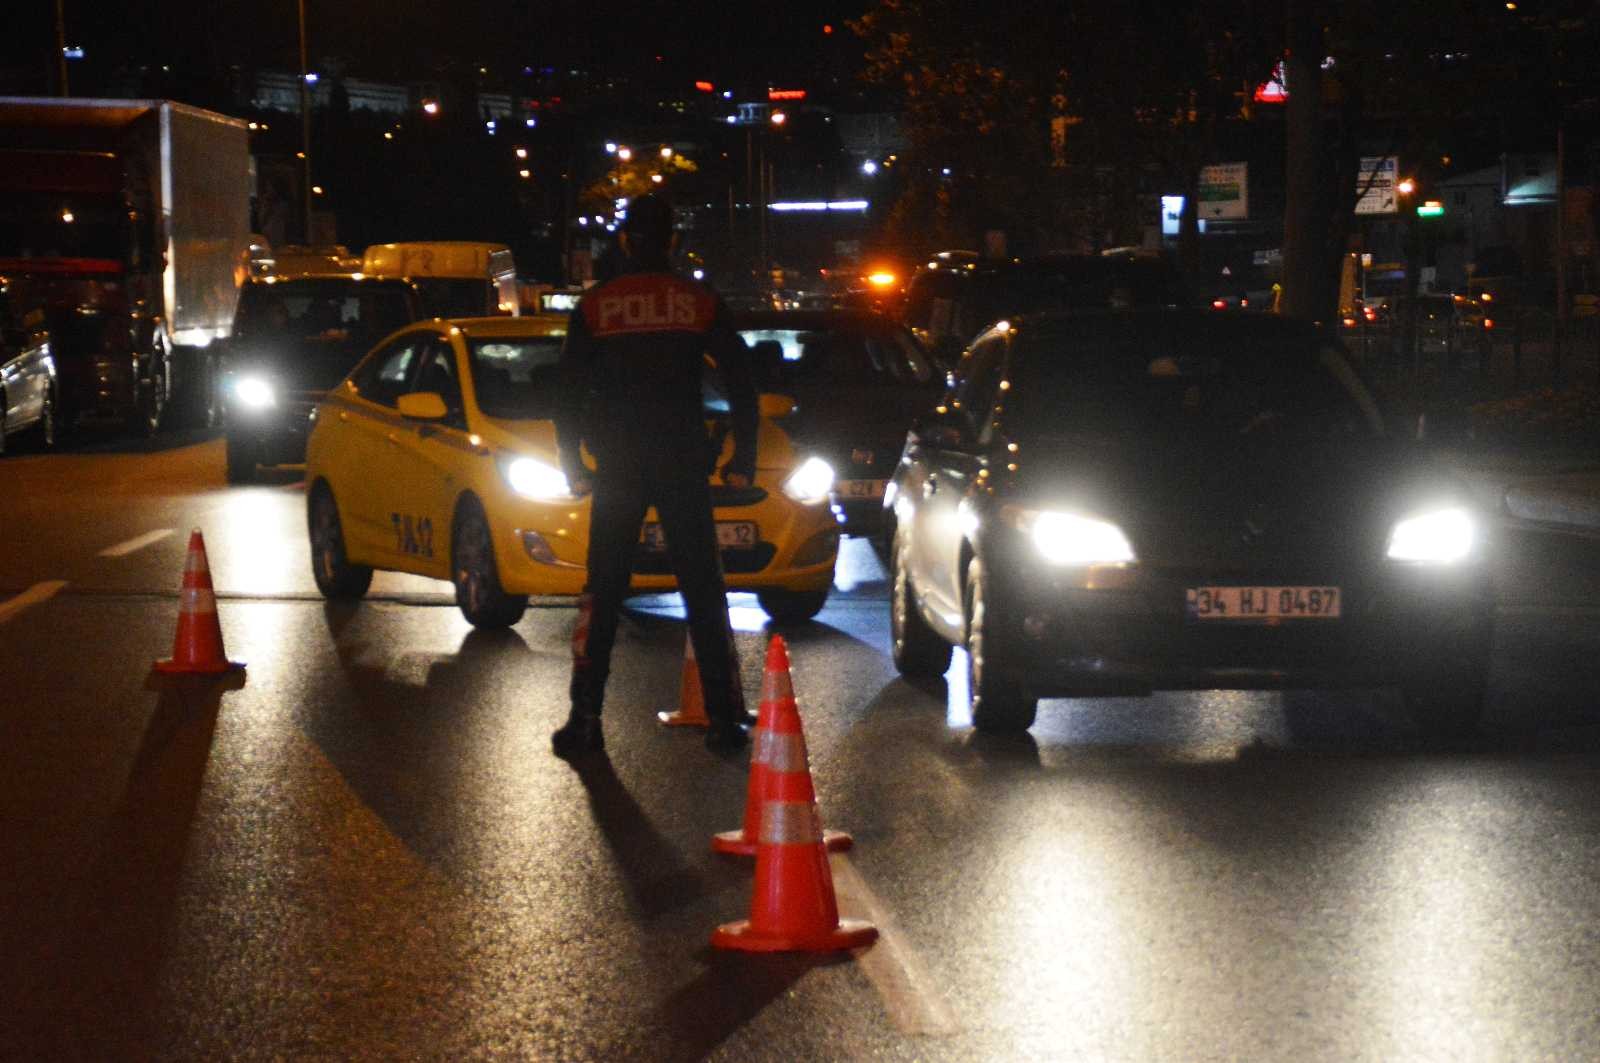 Asayiş uygulamasında aracında ruhsatsız silah bulunan sürücü gözaltına alındı #istanbul